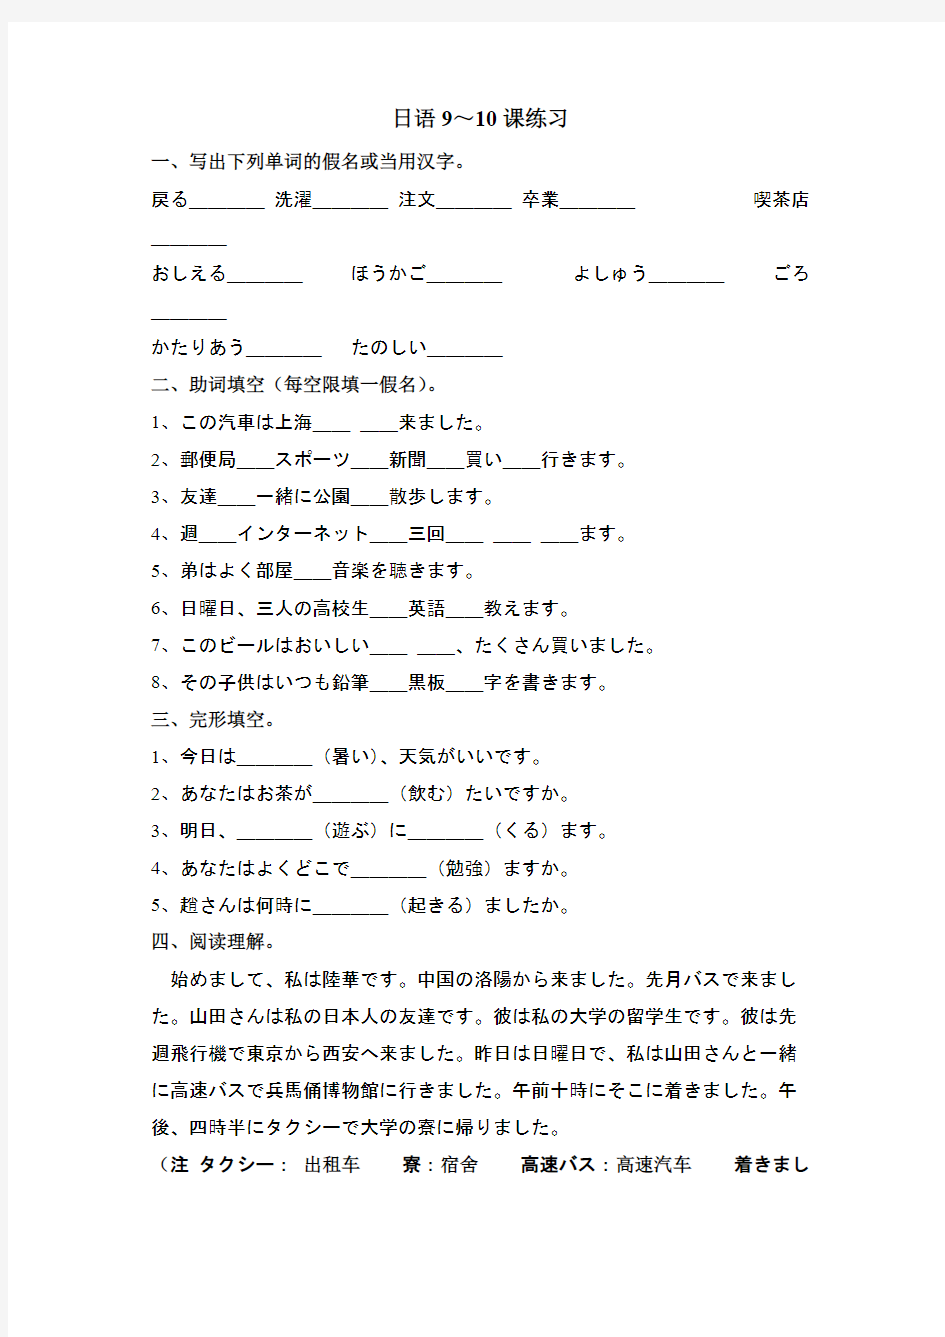 新世纪日本语教程初级第9-16课练习汇总